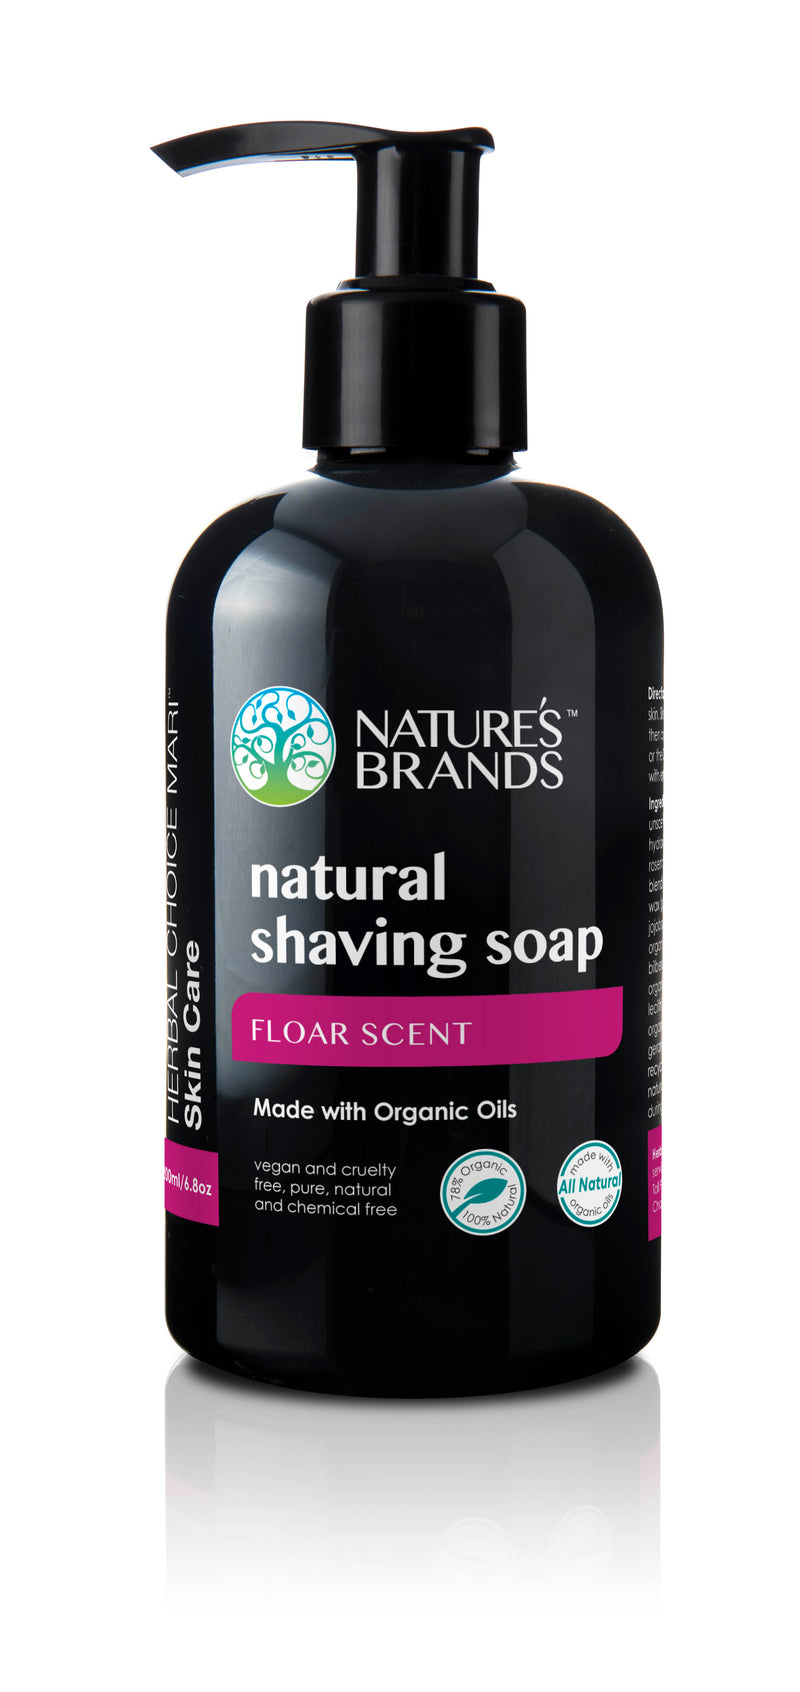 Herbal Choice Mari Natural Shaving Soap; Made with Organic - Herbal Choice Mari Natural Shaving Soap; Made with Organic - Herbal Choice Mari Natural Shaving Soap; Made with Organic